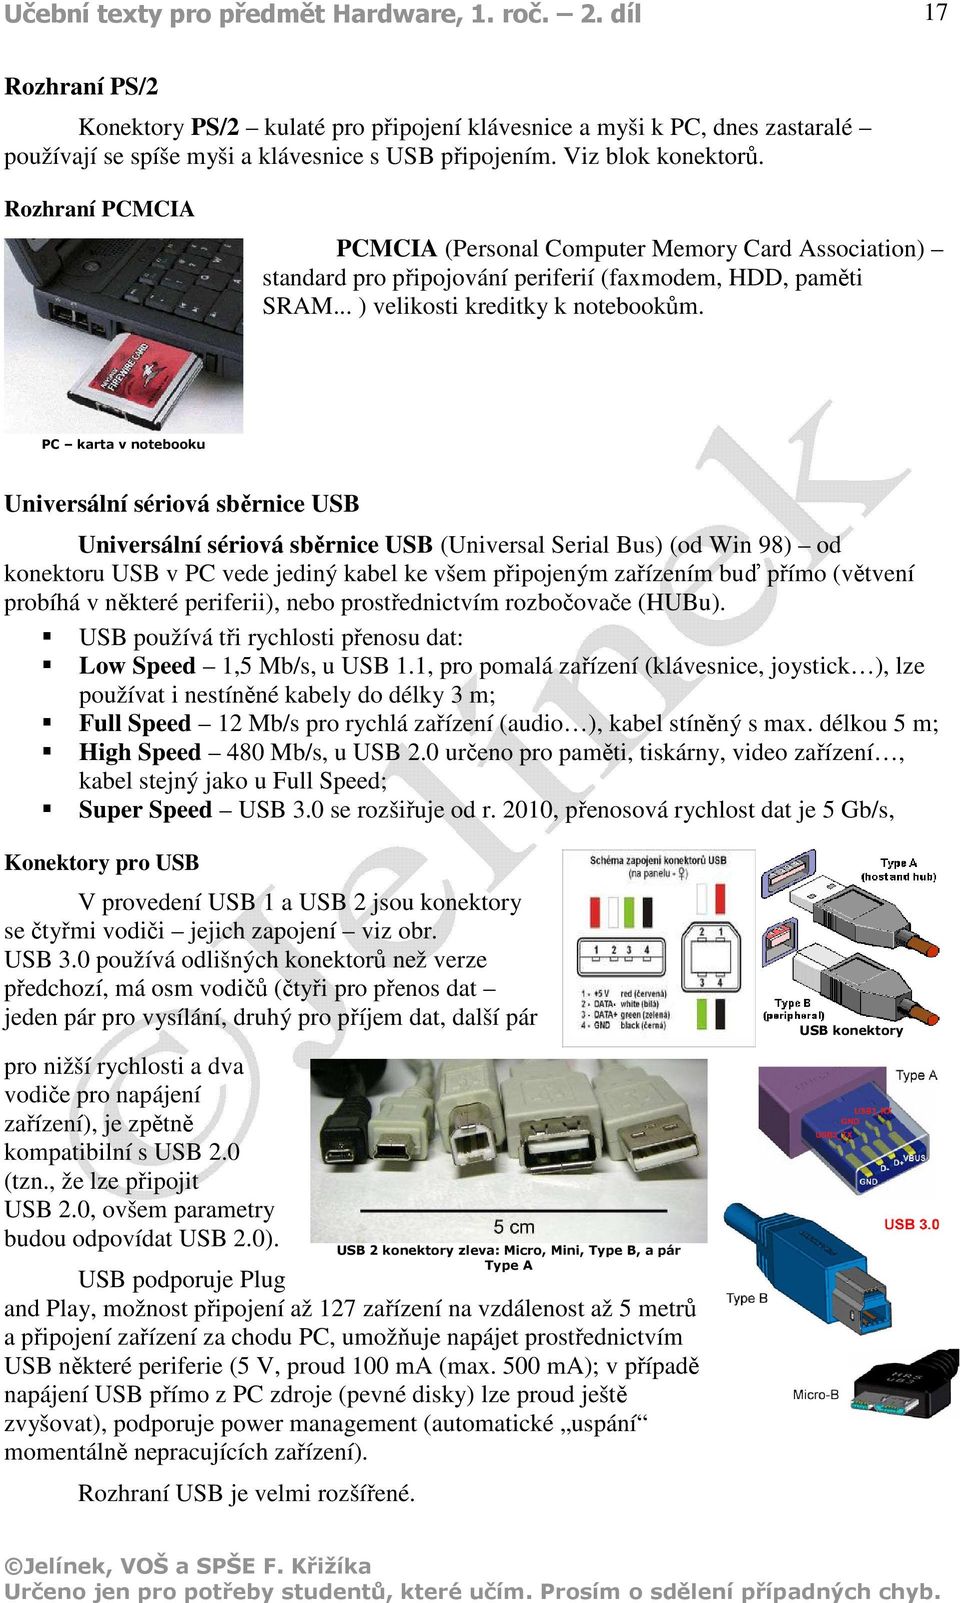 PC karta v notebooku Universální sériová sběrnice USB Universální sériová sběrnice USB (Universal Serial Bus) (od Win 98) od konektoru USB v PC vede jediný kabel ke všem připojeným zařízením buď